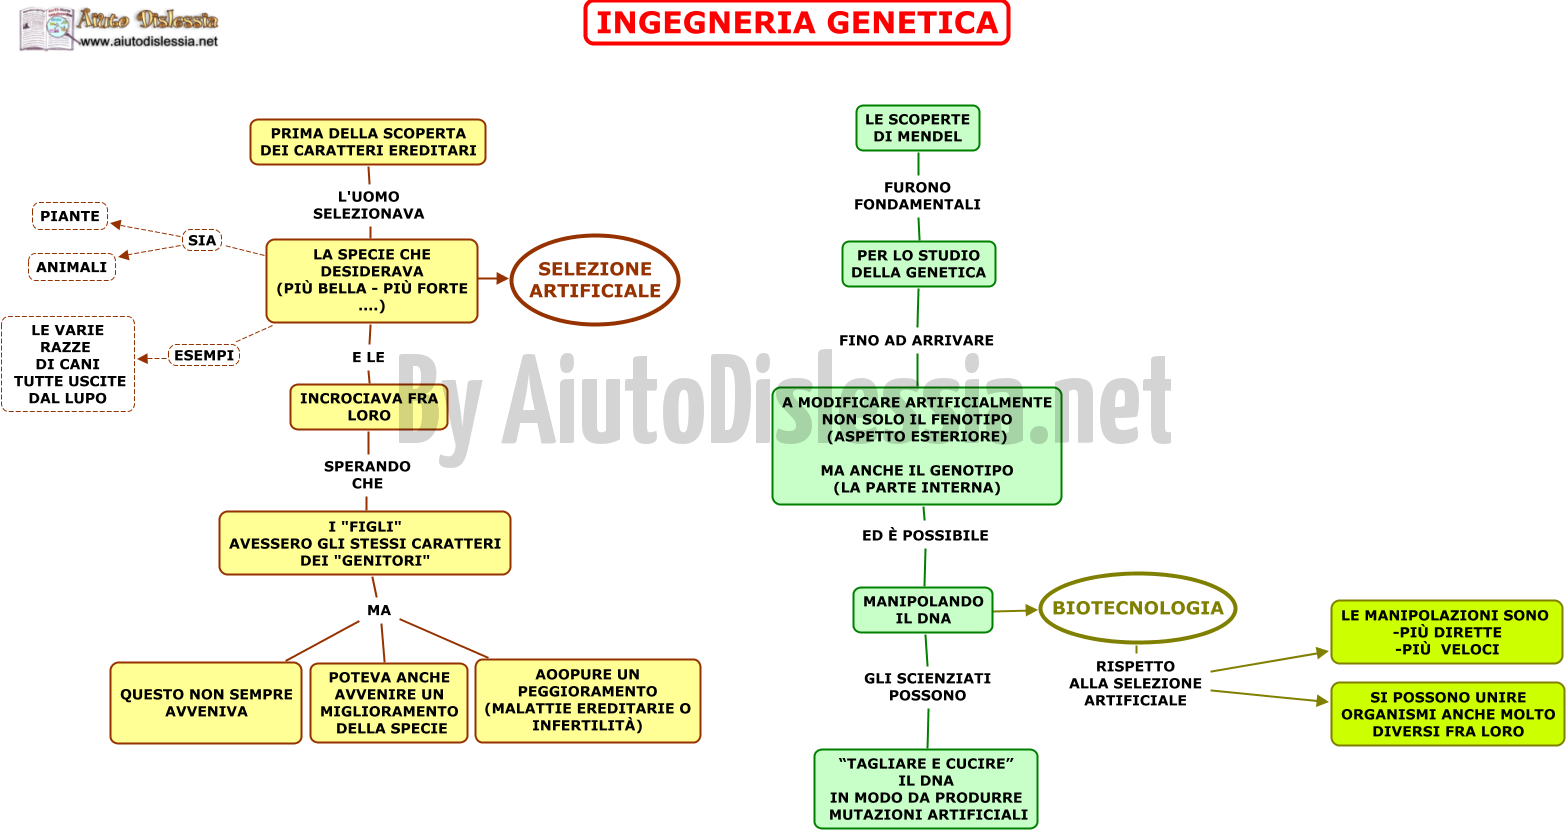 01.-INGEGNERIA-GENETICA